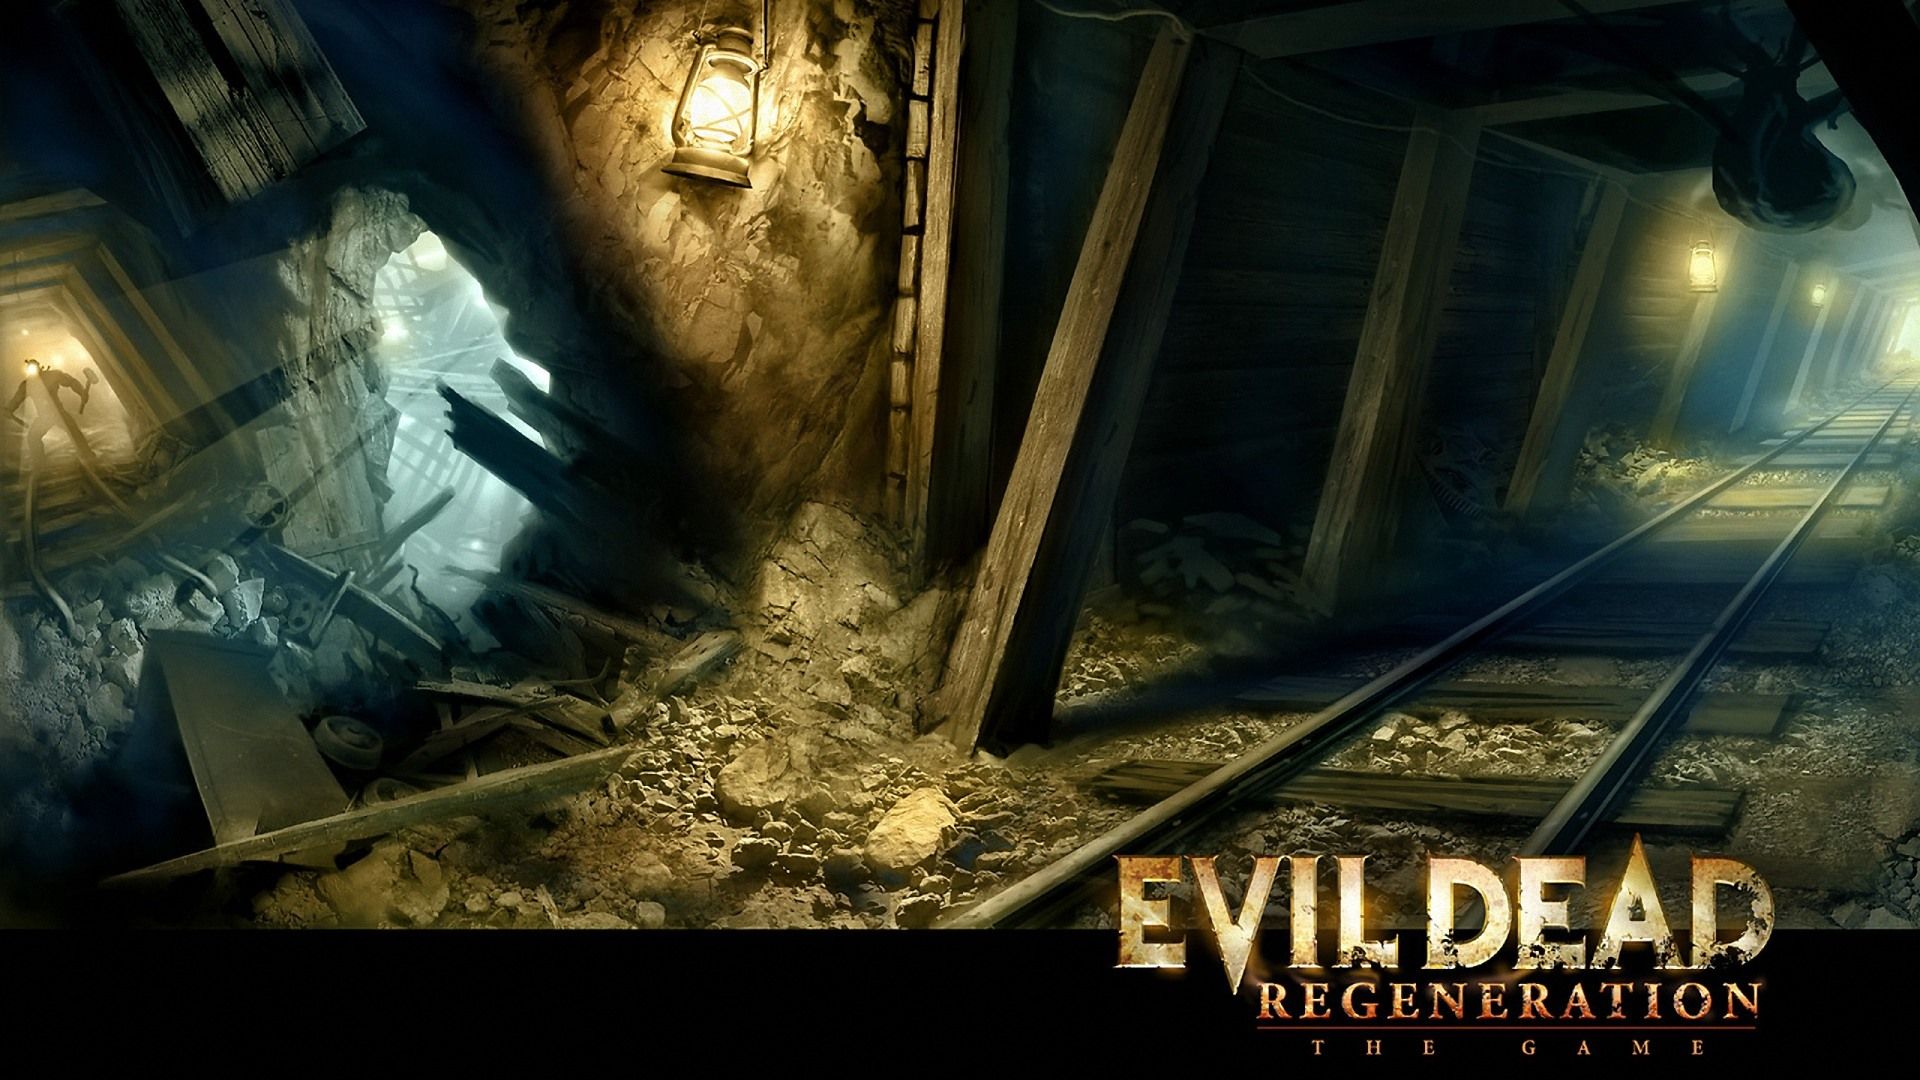 Evil Dead: Regeneration mines 1920x1080 Wallpapers, 1920x1080 ...